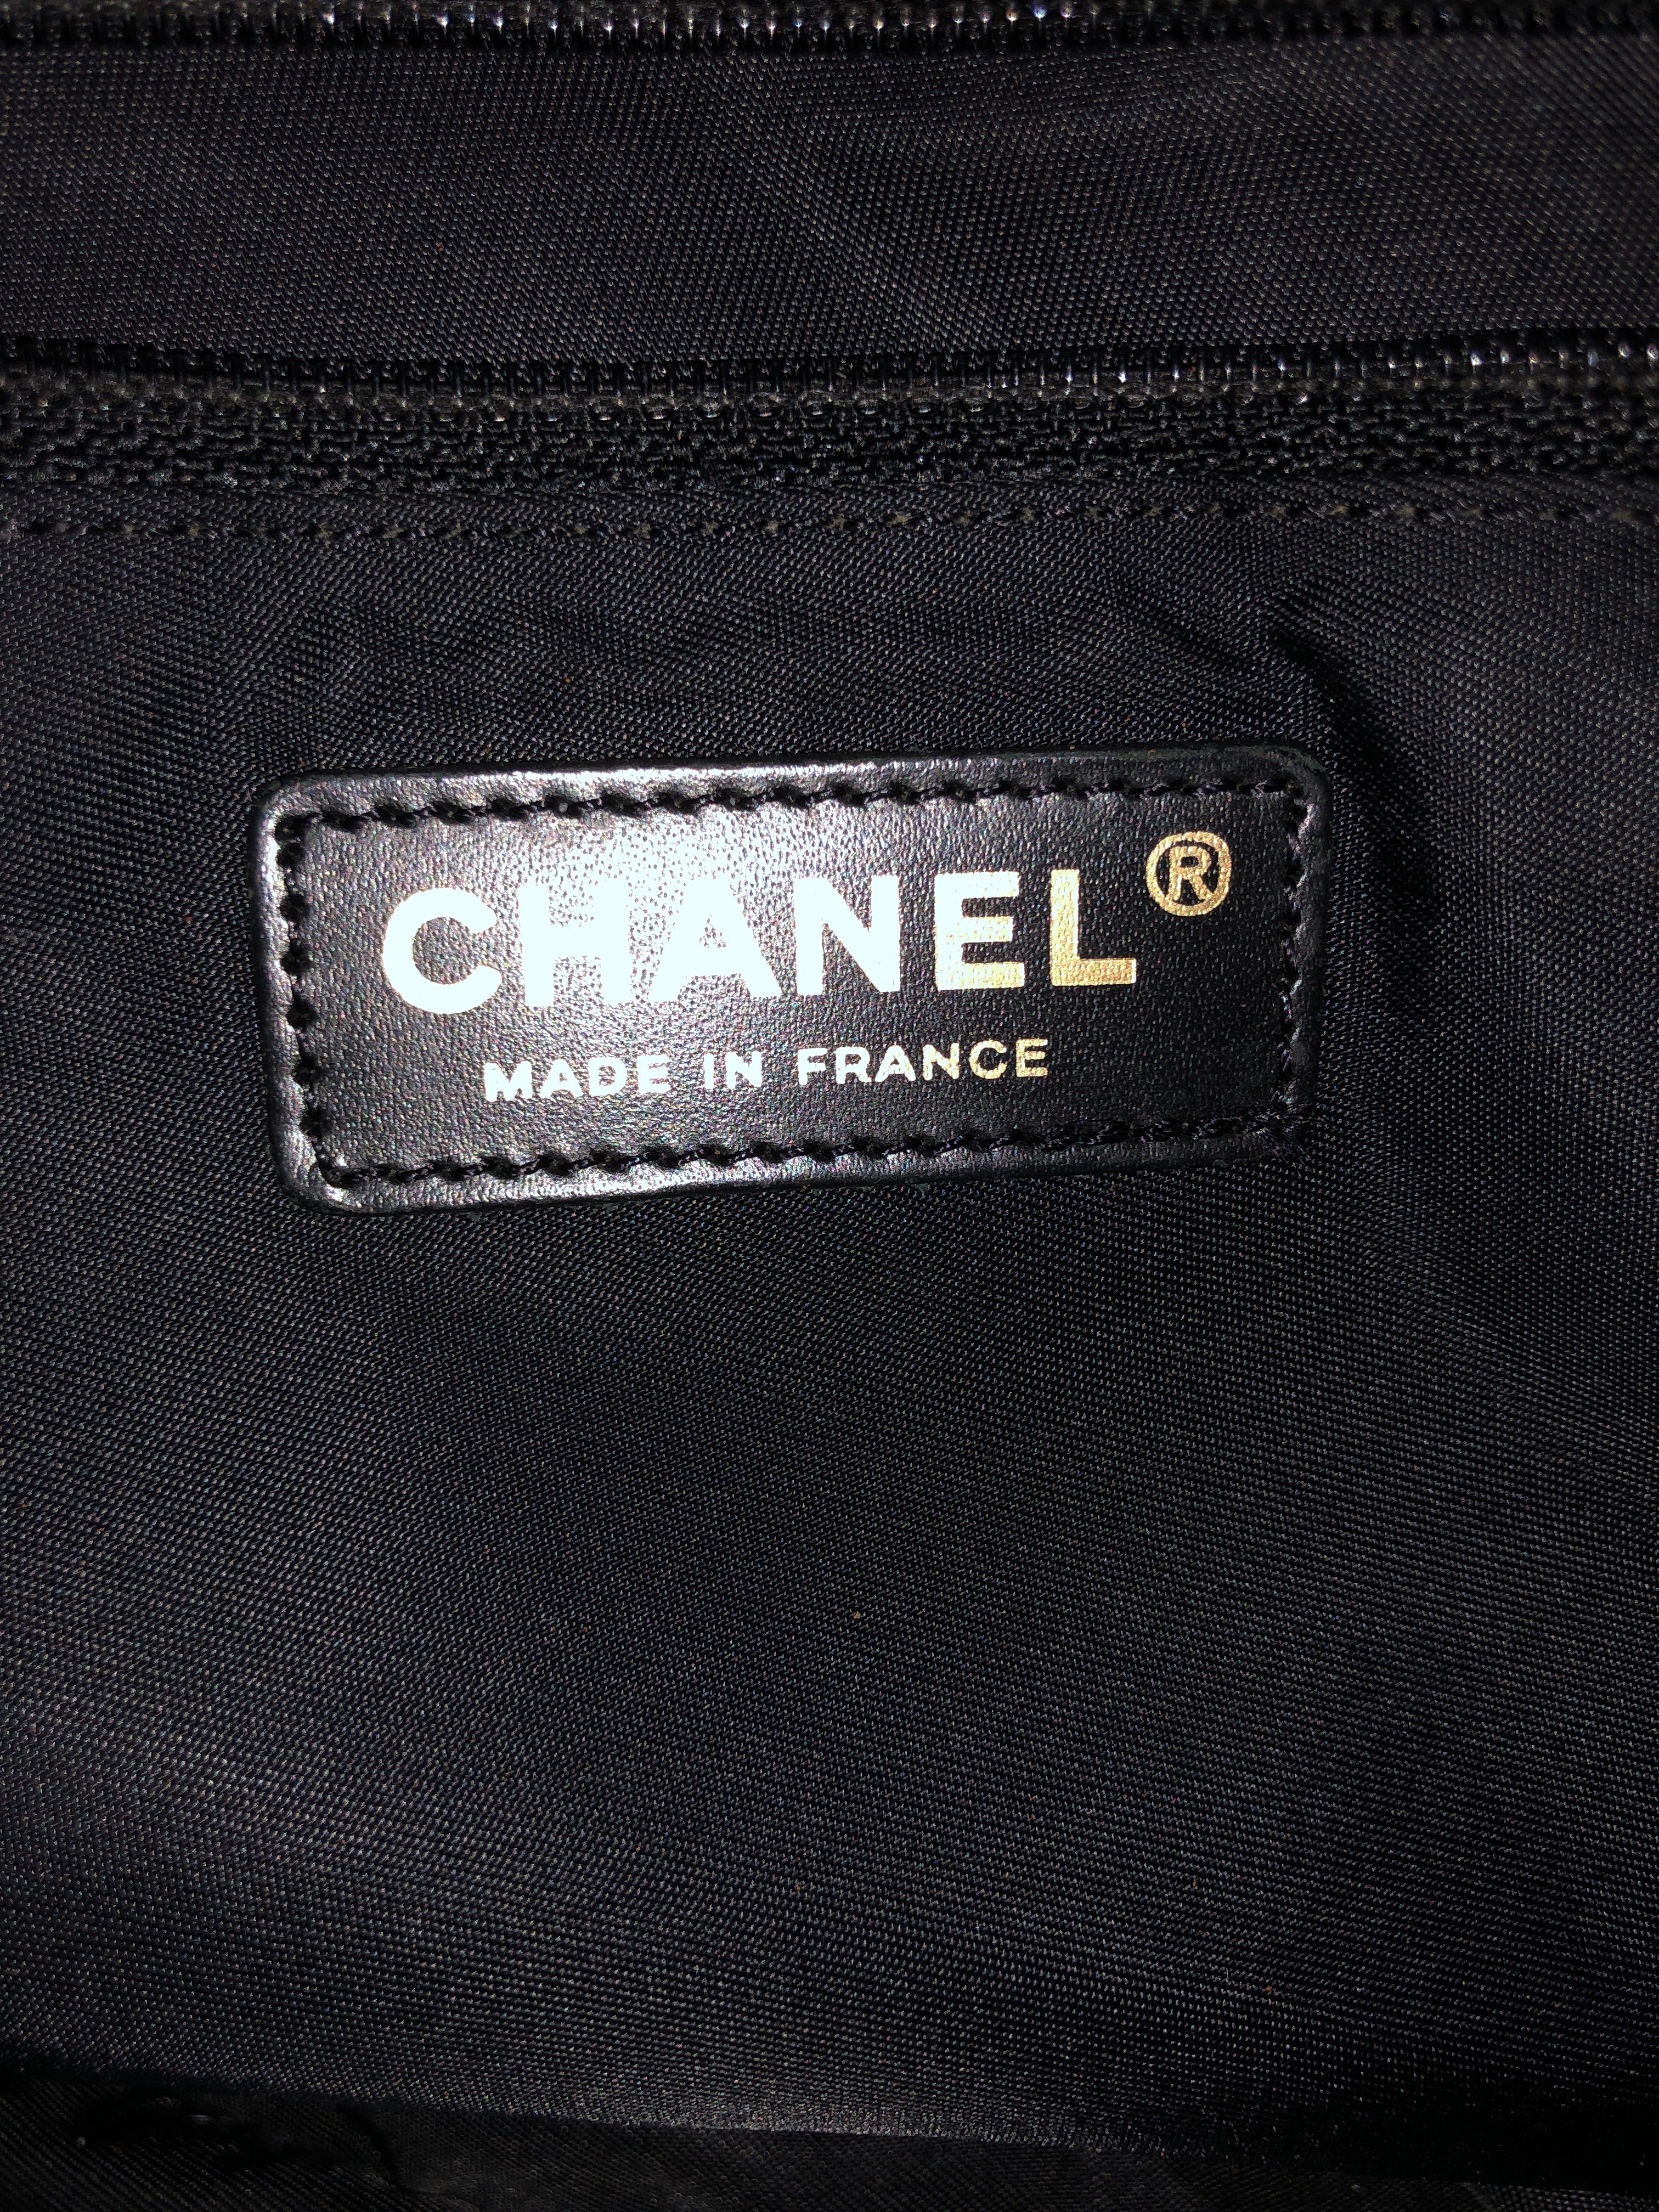 chanel large travel bag